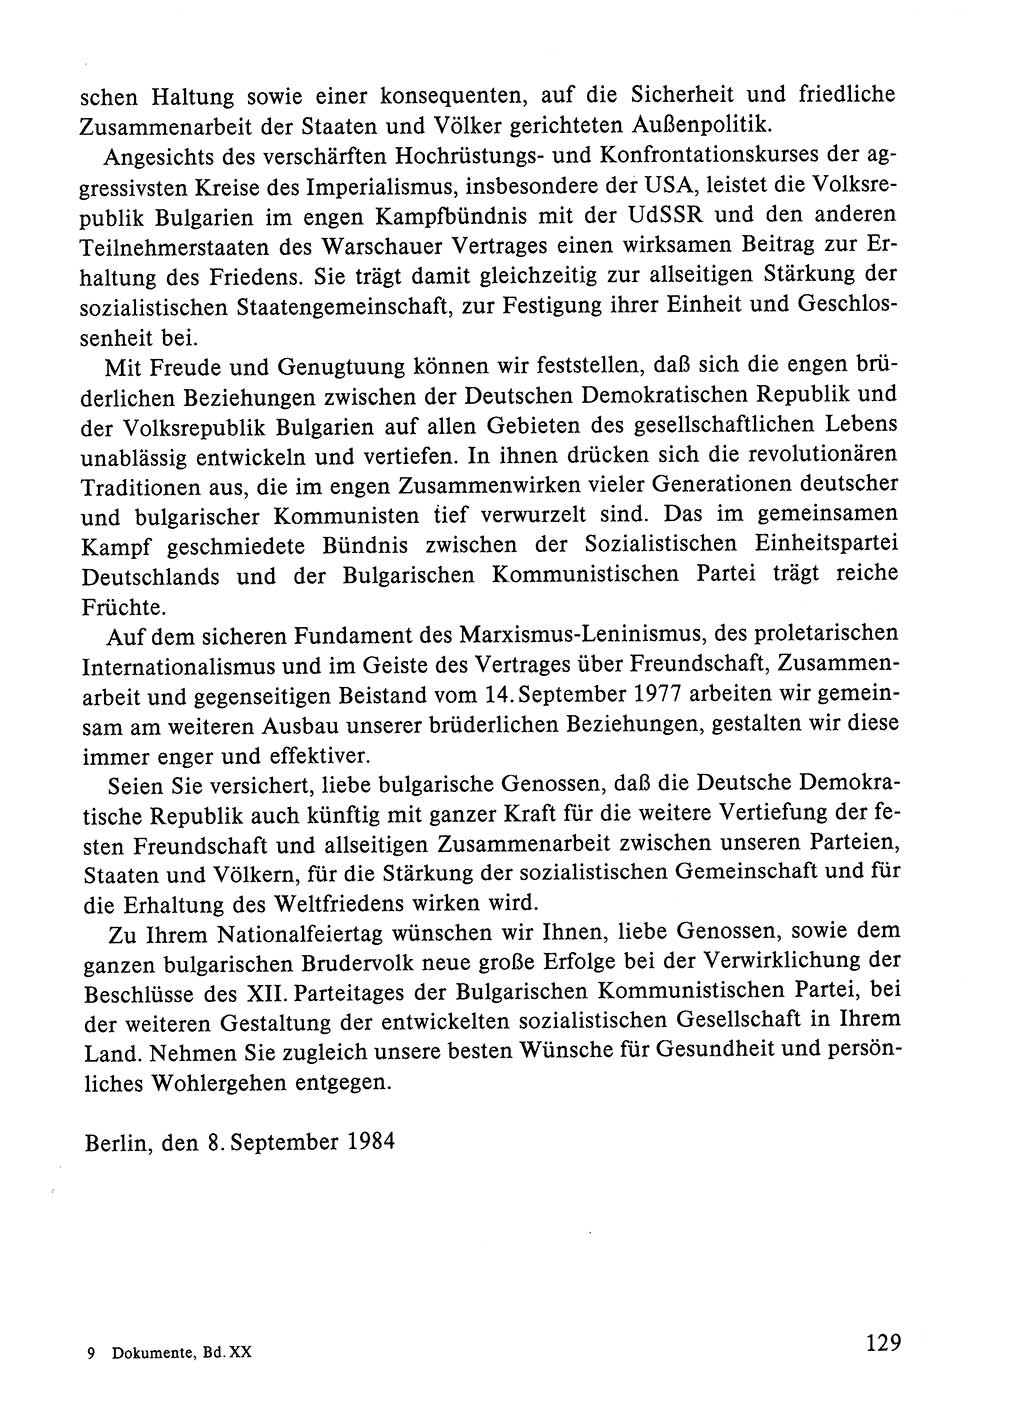 Dokumente der Sozialistischen Einheitspartei Deutschlands (SED) [Deutsche Demokratische Republik (DDR)] 1984-1985, Seite 298 (Dok. SED DDR 1984-1985, S. 298)